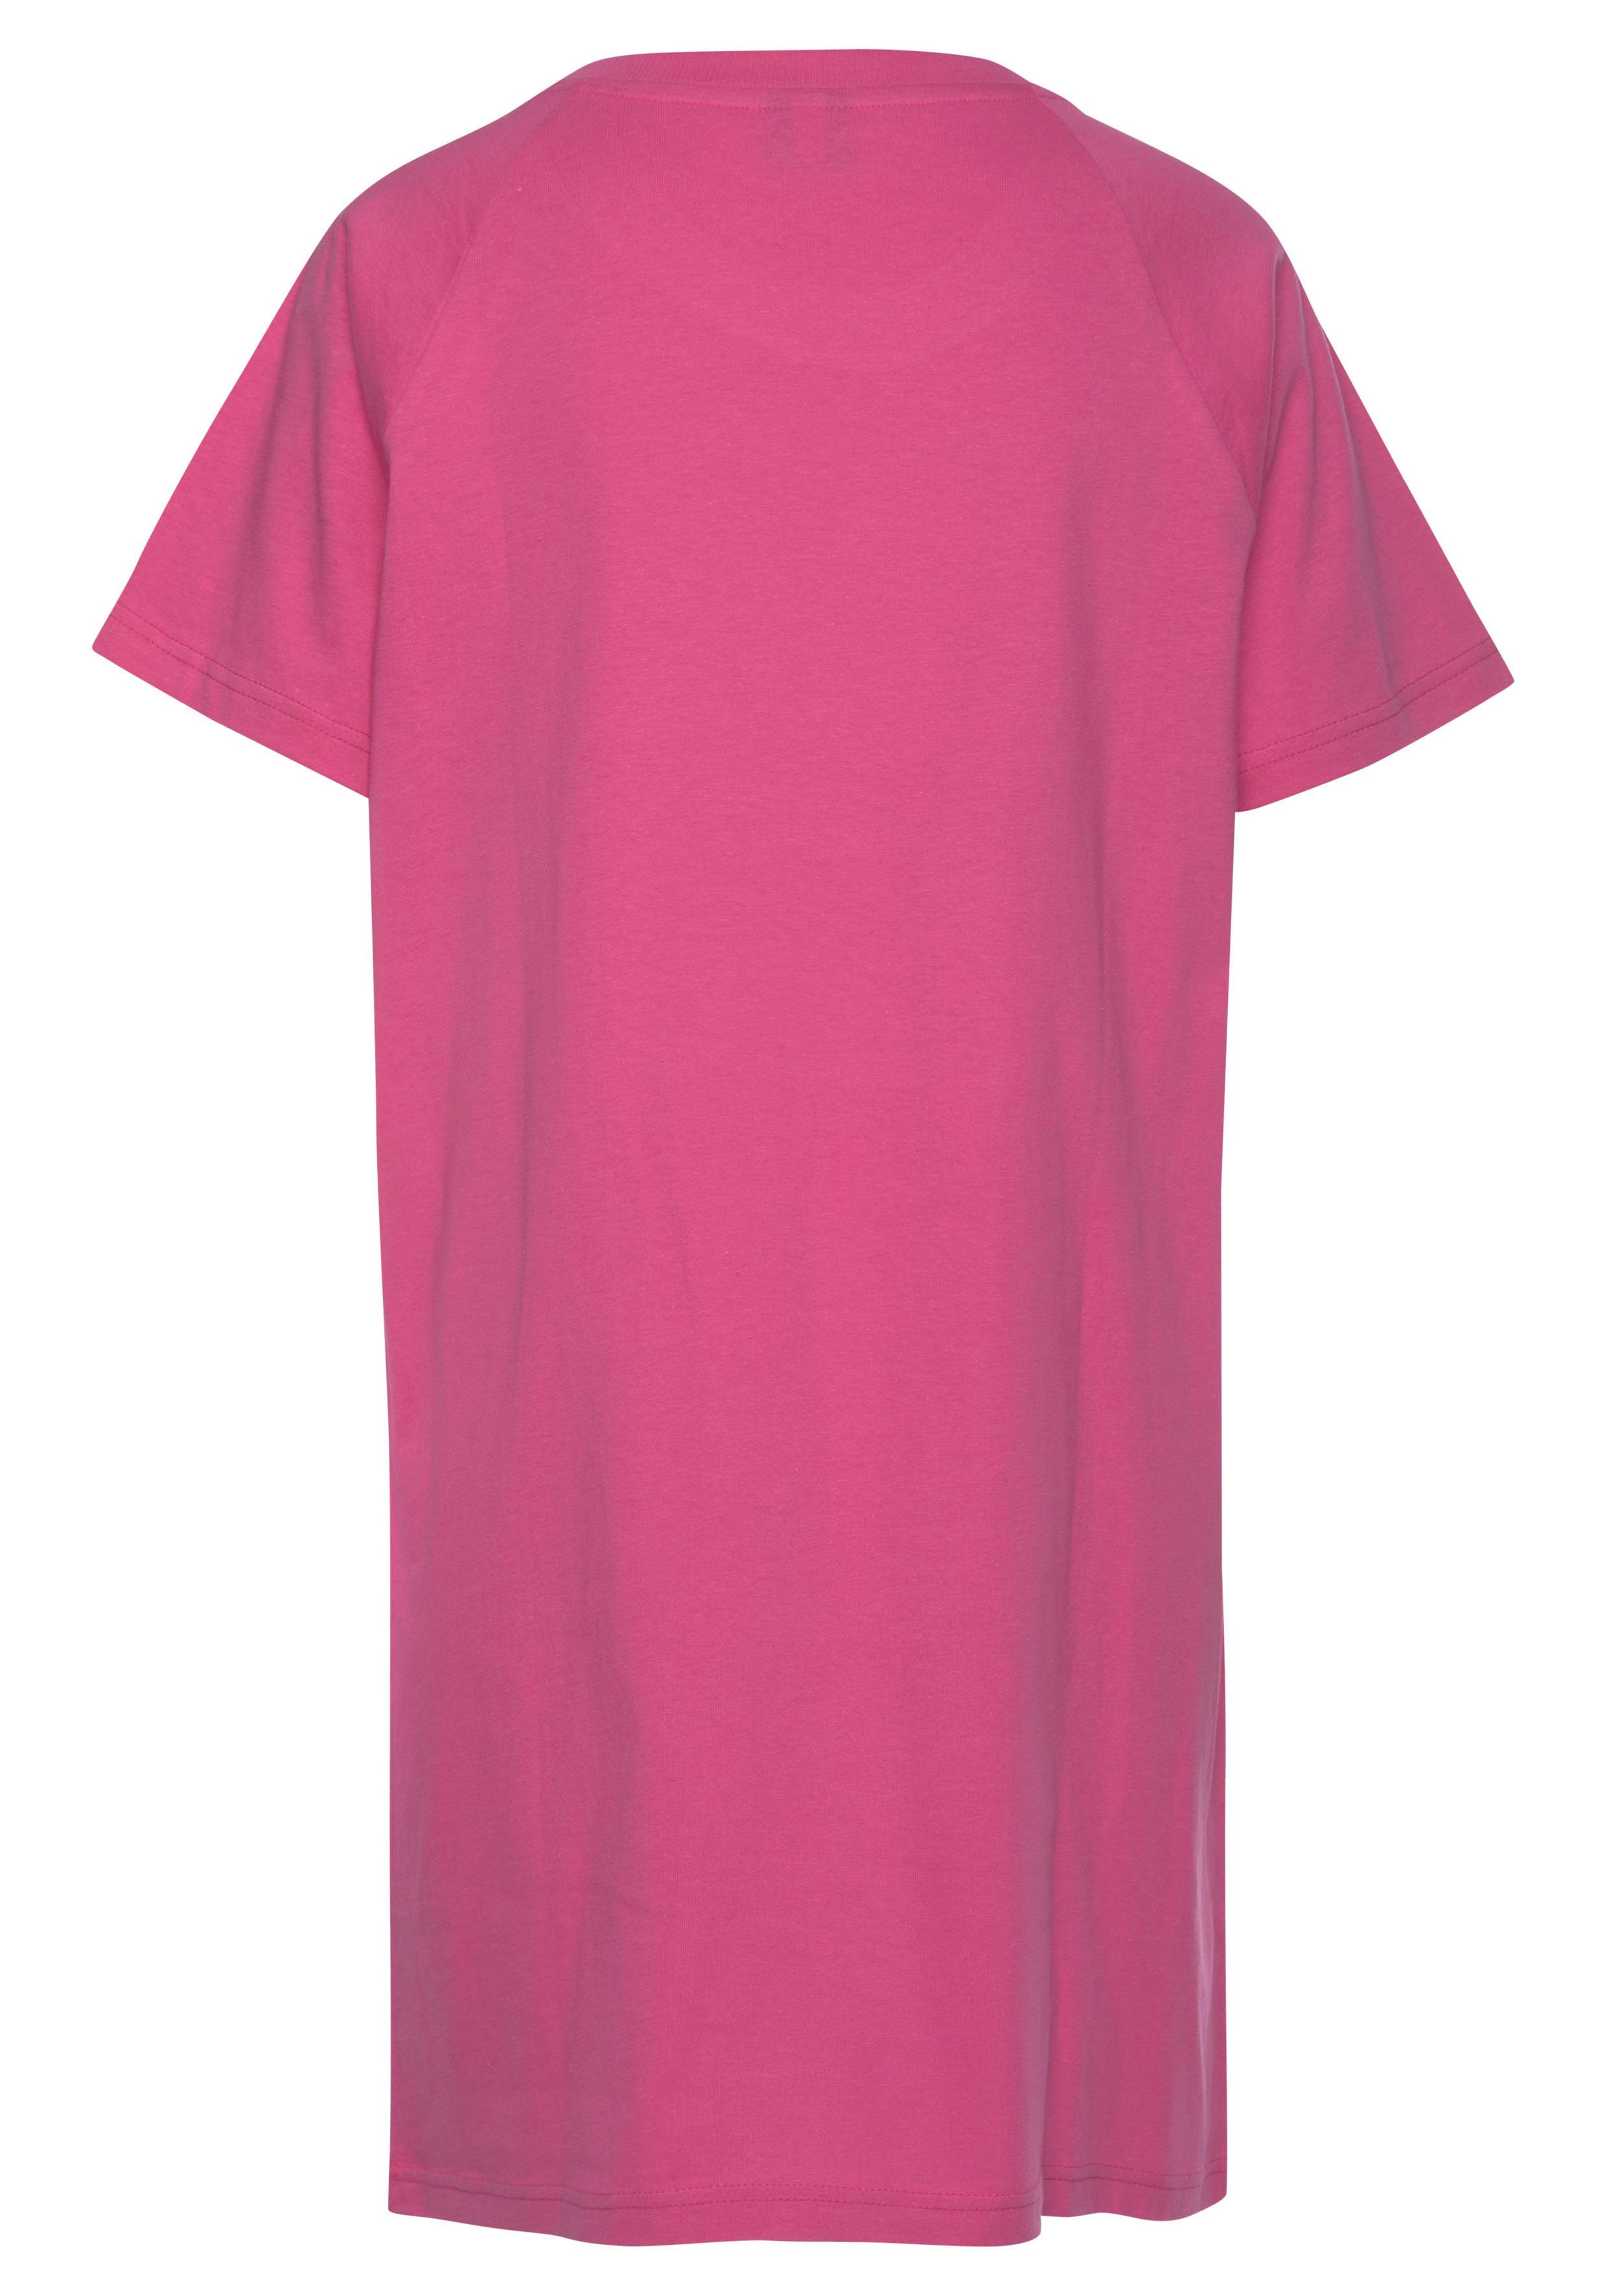 Bigshirt Slogan-Frontdruck pink mit KangaROOS